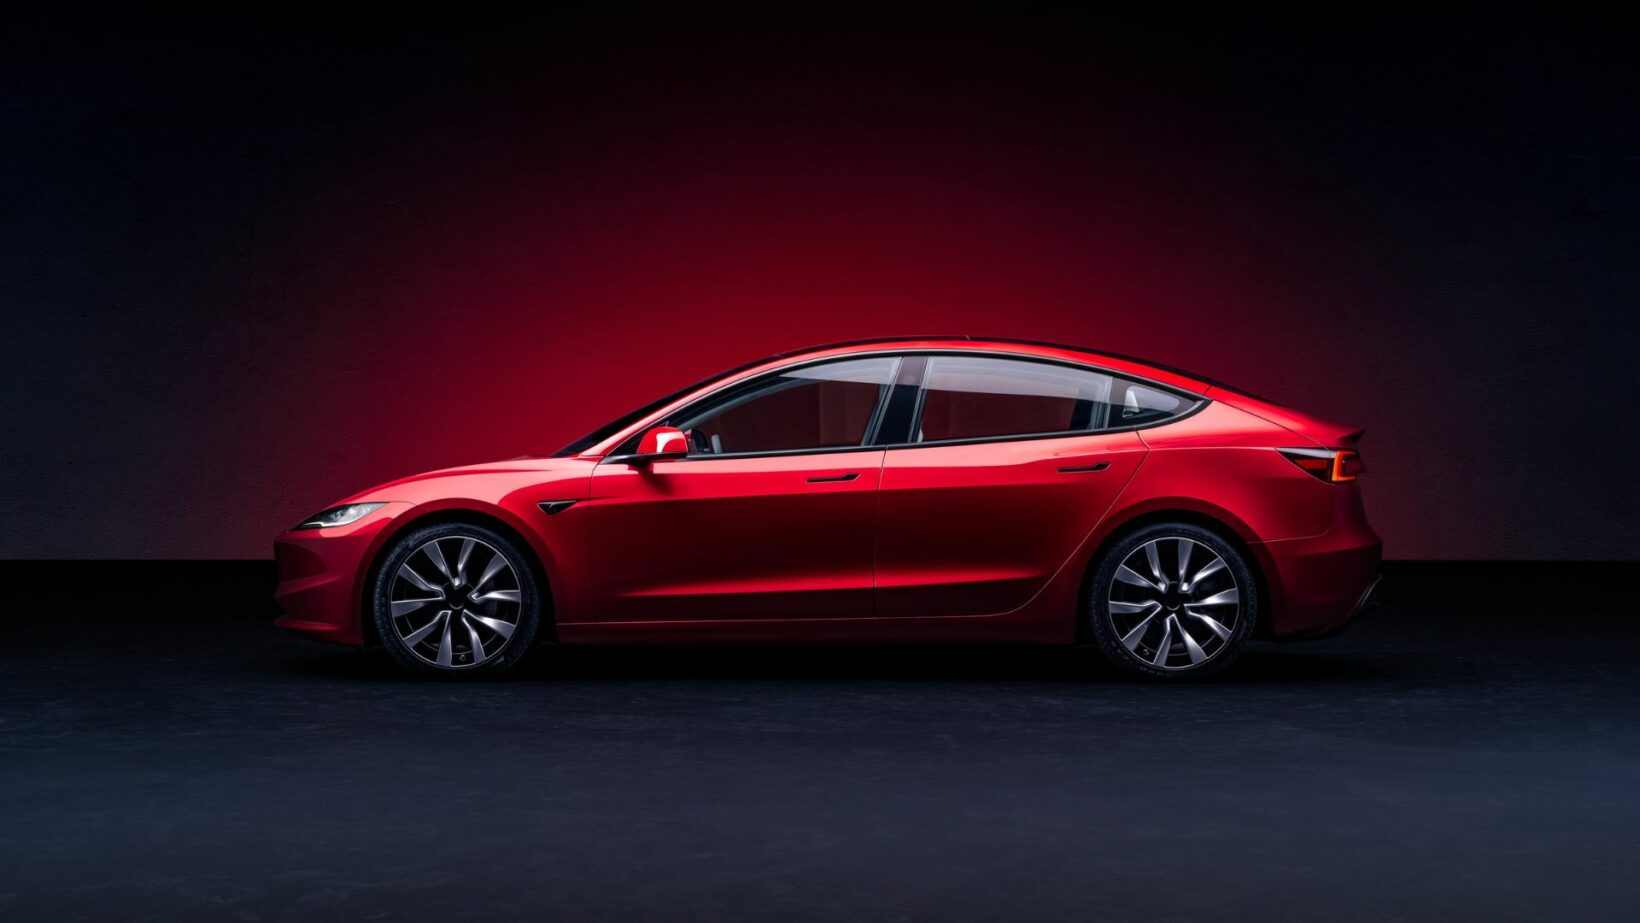 Les dimensions extérieures de la Tesla Model 3 sont : longueur de 4 720 mm, largeur (avec rétroviseurs) de 2 089 mm, largeur (sans rétroviseurs) de 1 850 mm, hauteur de 1 440 mm, empattement de 2 875 mm, porte-à-faux avant de 868 mm, porte-à-faux arrière de 977 mm, et une garde au sol de 138 mm.